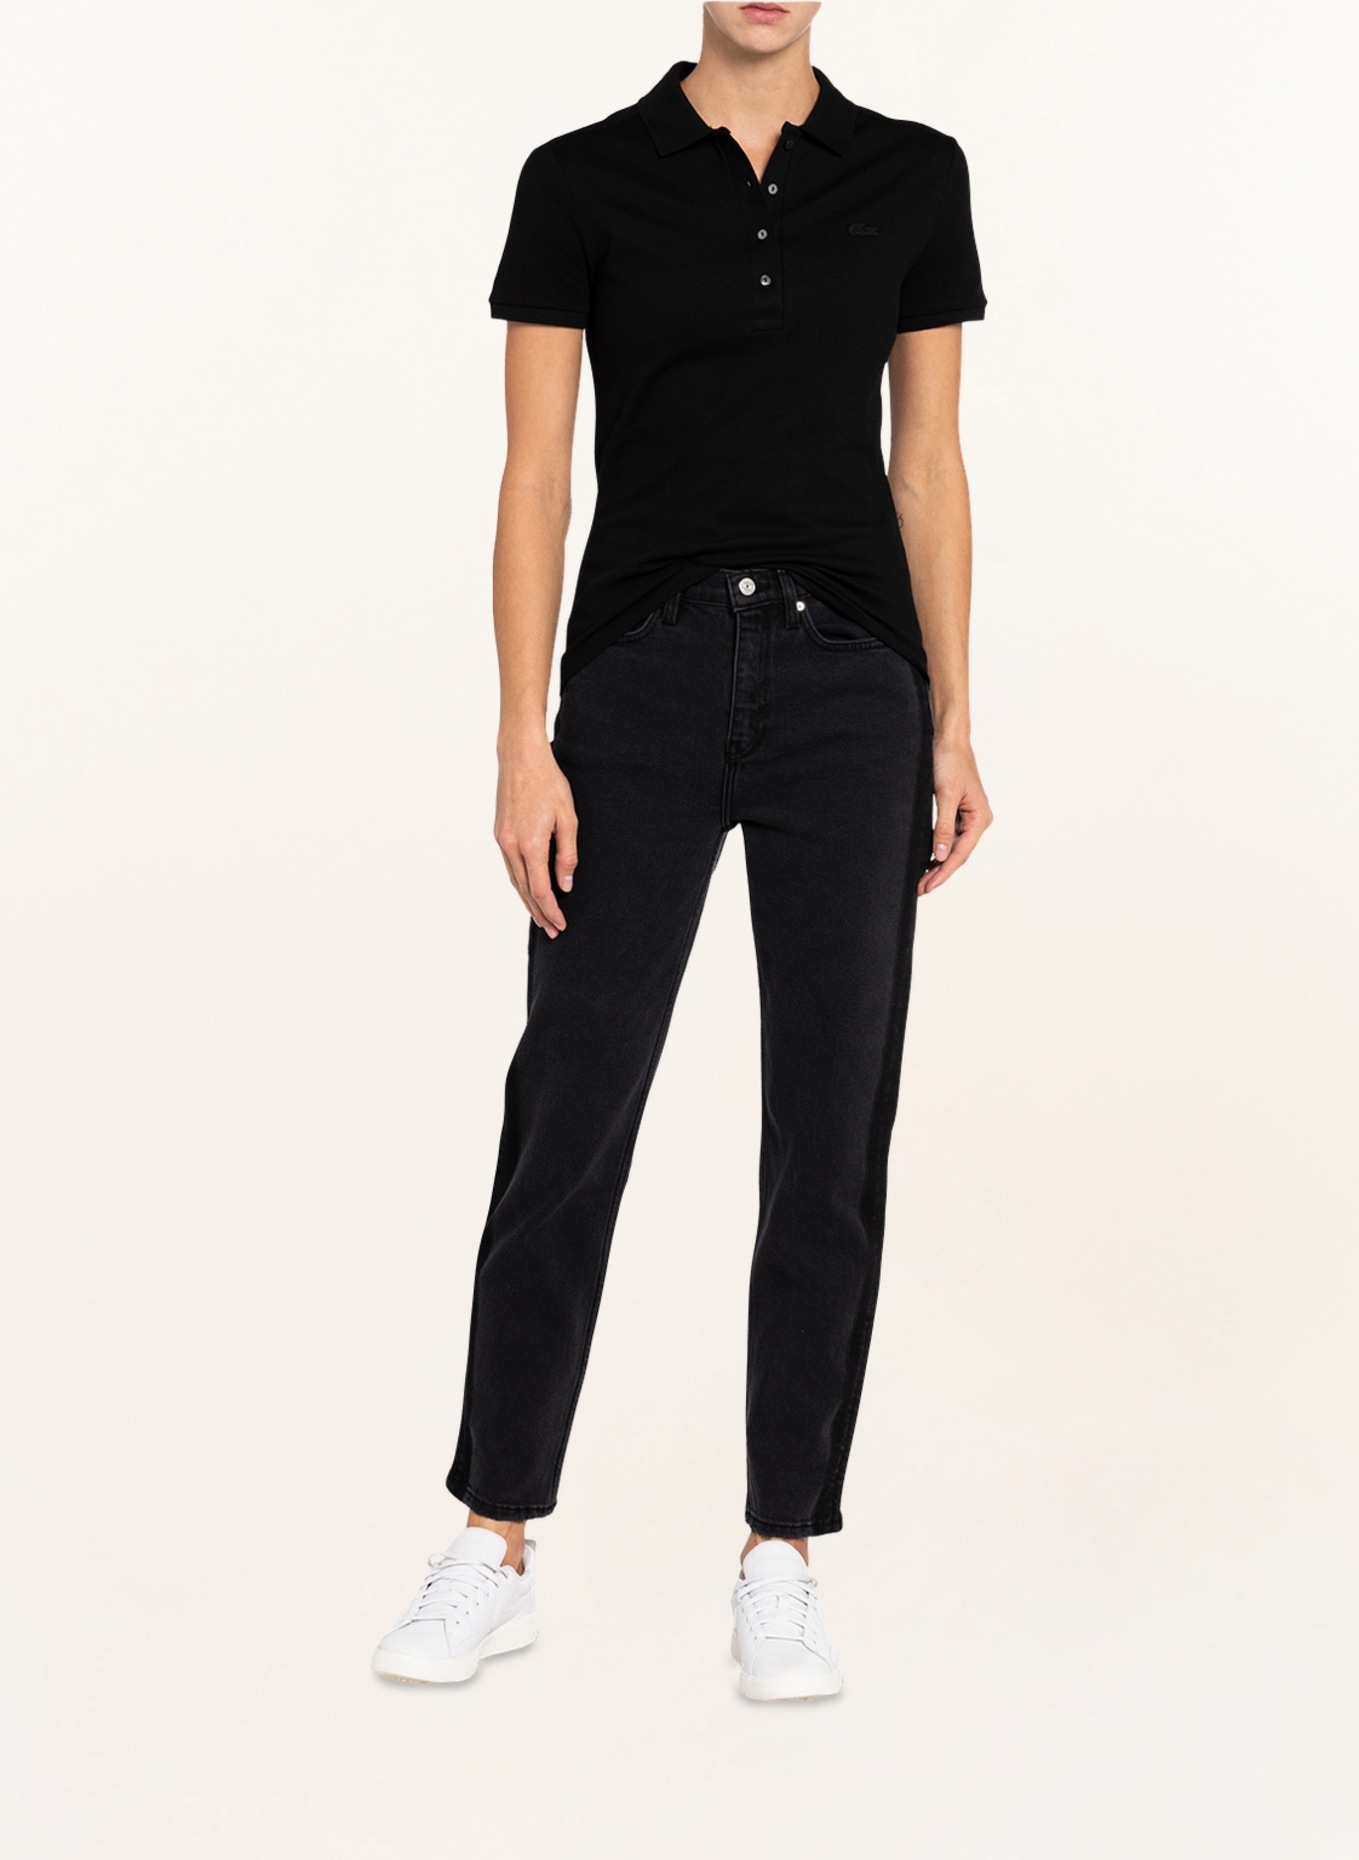 LACOSTE Piqué-Poloshirt Slim Fit, Farbe: SCHWARZ (Bild 2)